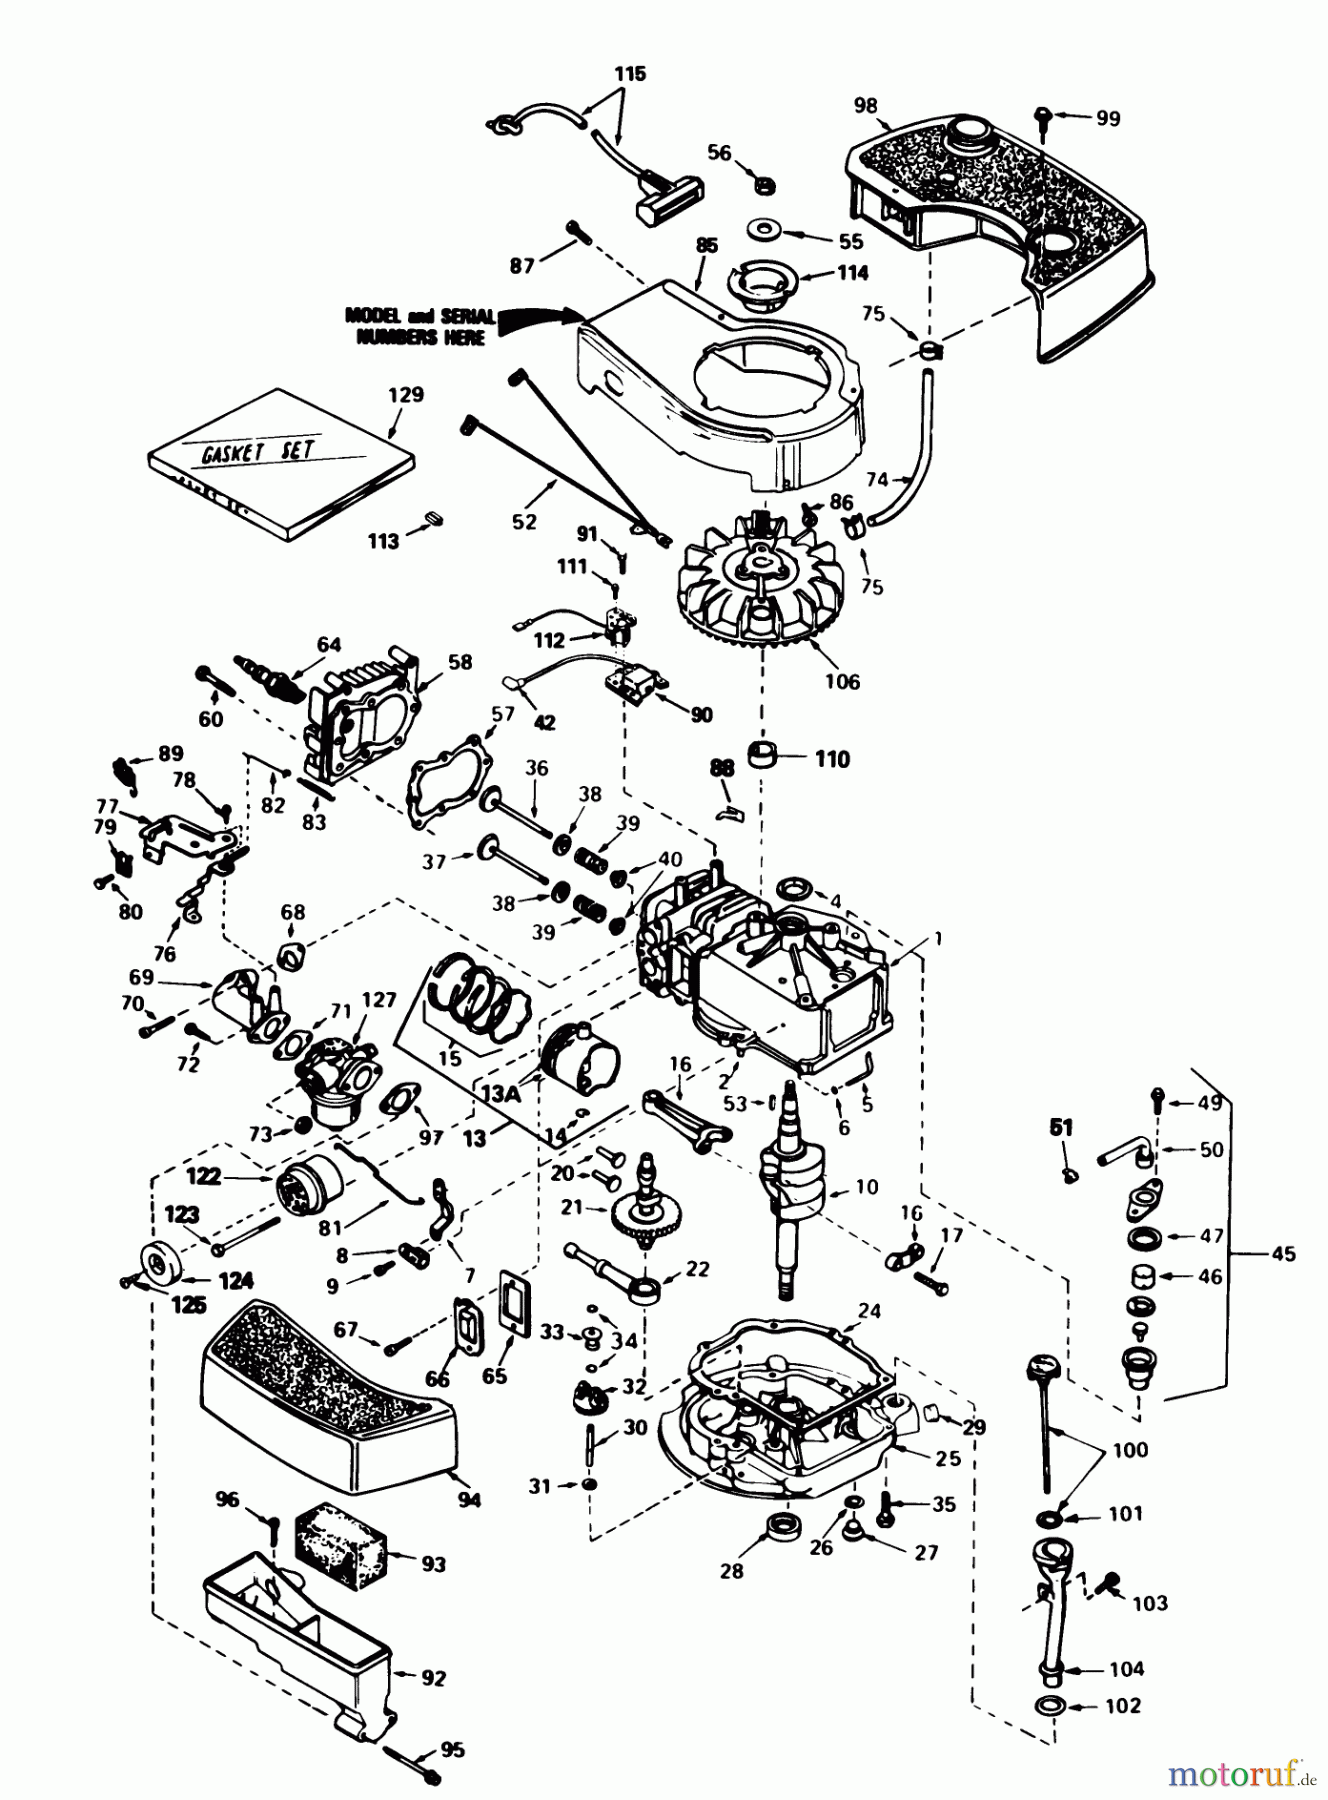  Toro Neu Mowers, Walk-Behind Seite 1 20676 - Toro Lawnmower, 1985 (5000001-5999999) ENGINE TECUMSEH MODEL NO. TNT 100-10095E